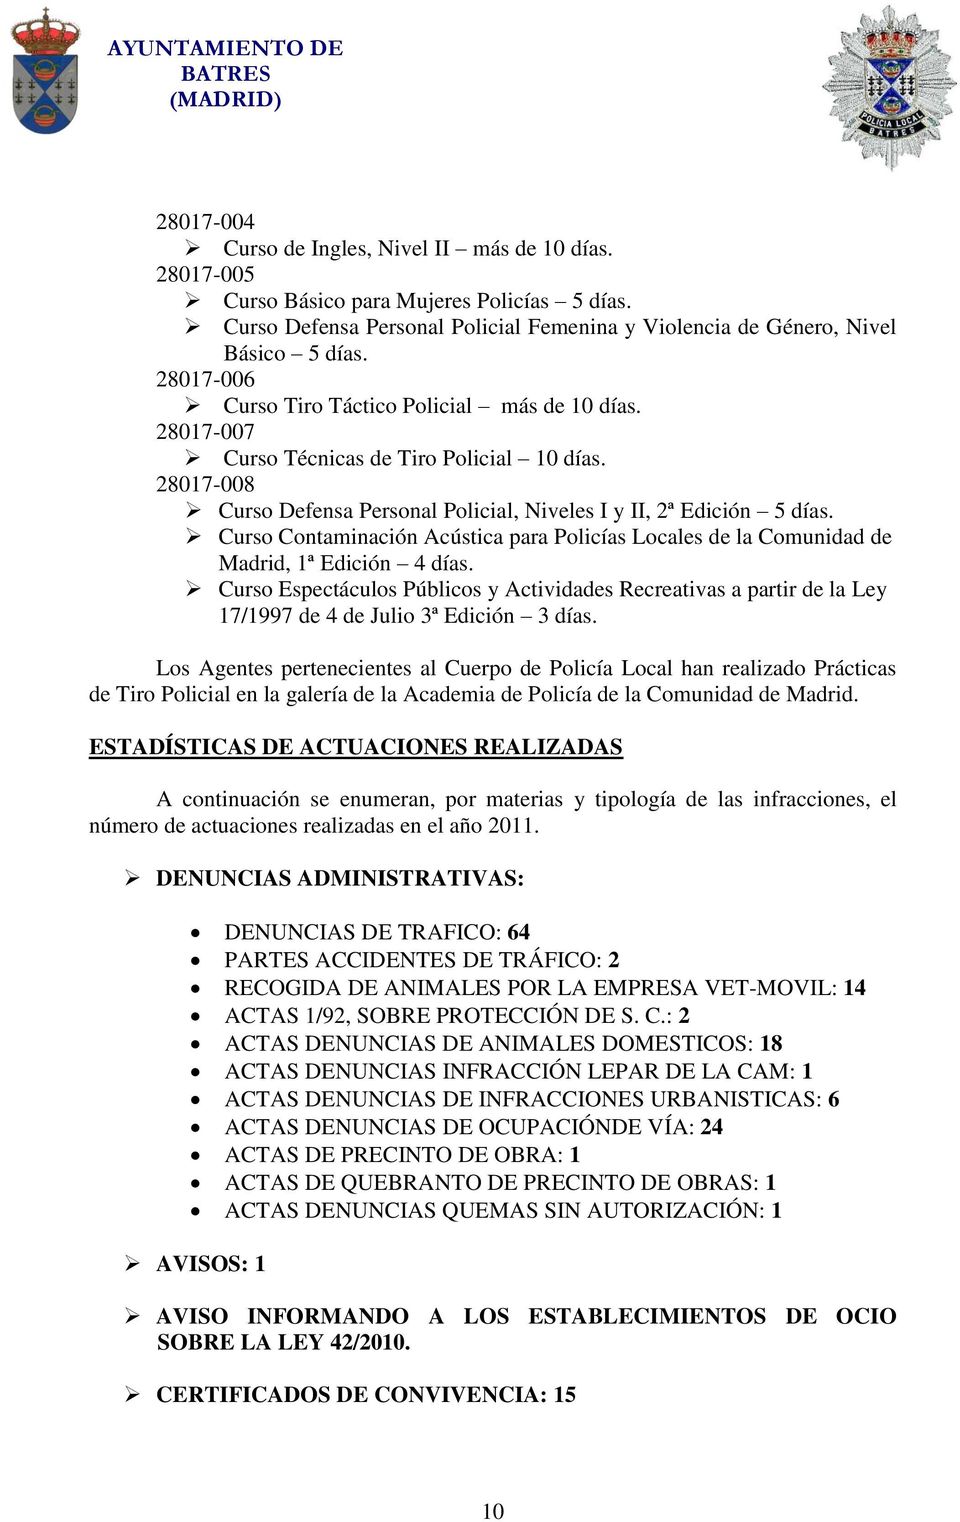 Curso Contaminación Acústica para Policías Locales de la Comunidad de Madrid, 1ª Edición 4 días.